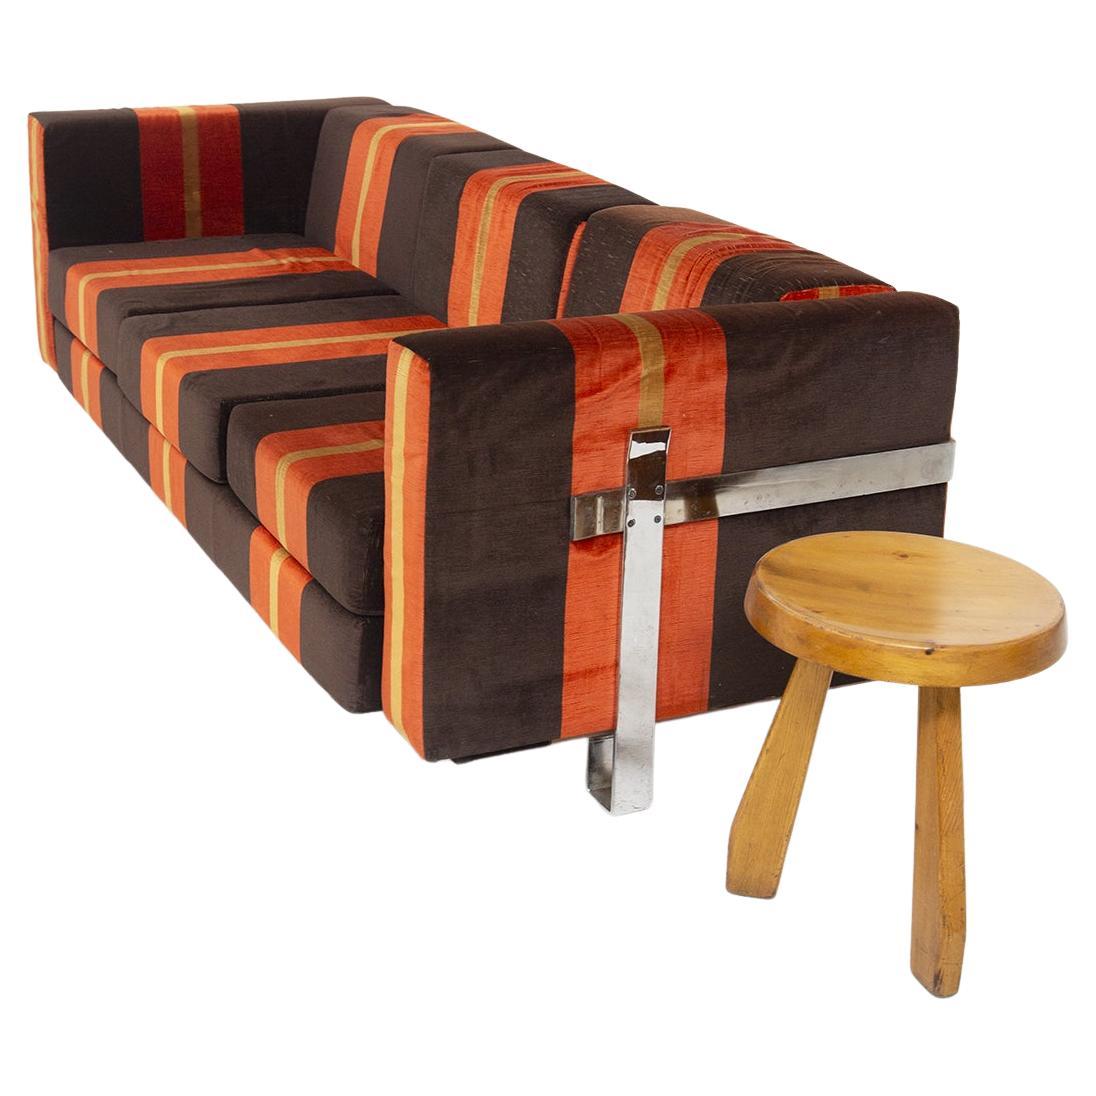 Das wunderschöne Sofa aus Stoff, entworfen von Luigi Caccia Dominioni für den feinen Hersteller Azucena Italia.
Das Vintage-Sofa ist aus braunem, orangefarbenem und gelb gestreiftem Stoff gefertigt, der einen sehr bunten geometrischen Effekt